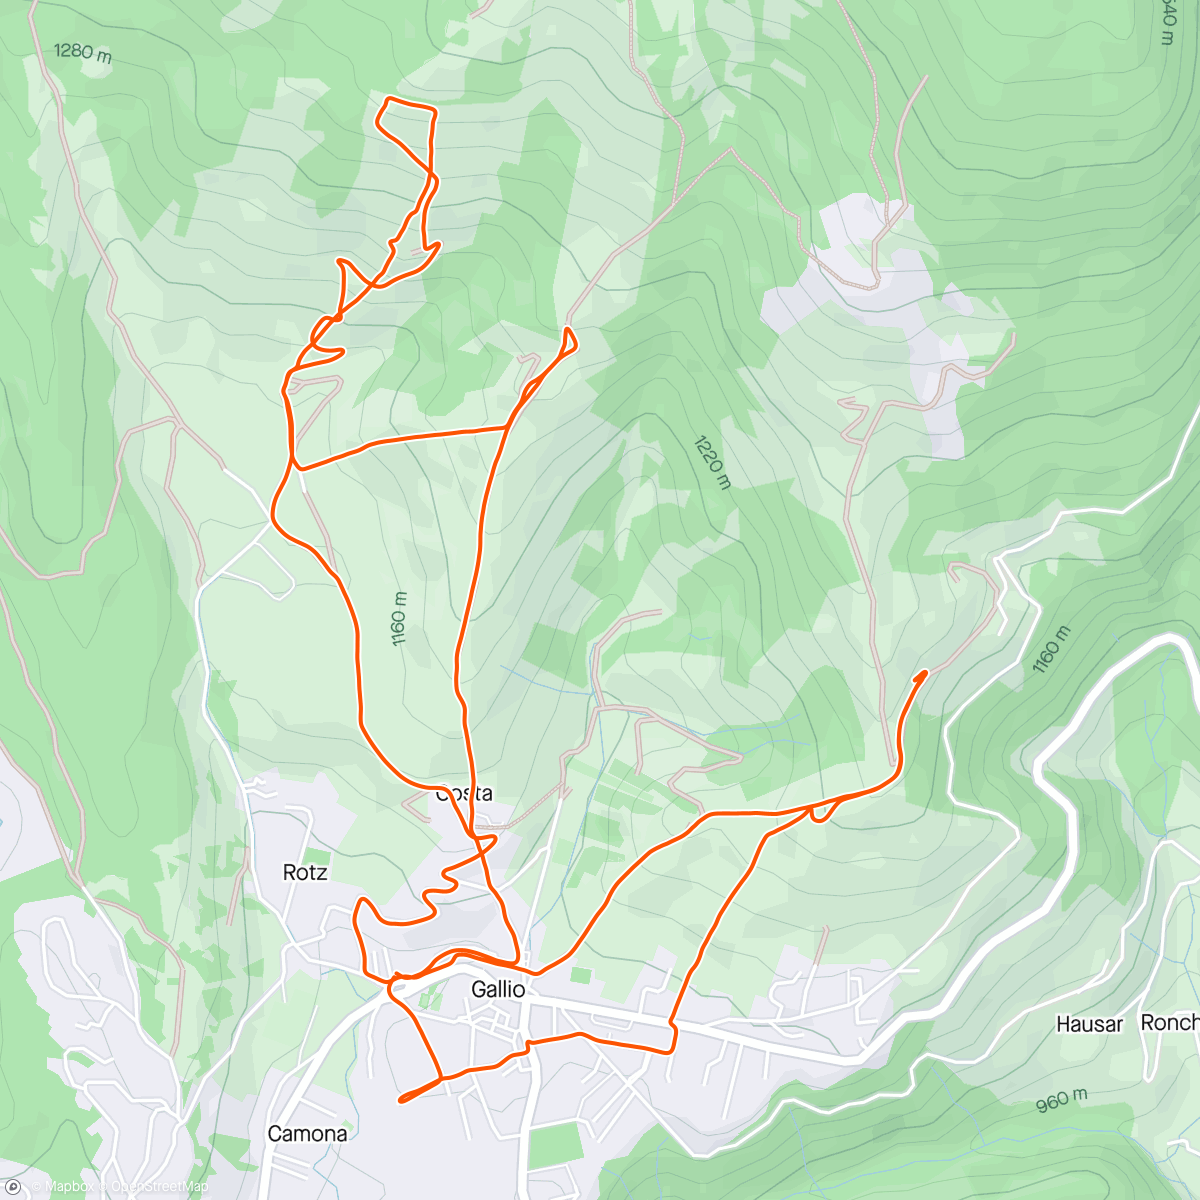 「Sessione di trail running mattutina」活動的地圖